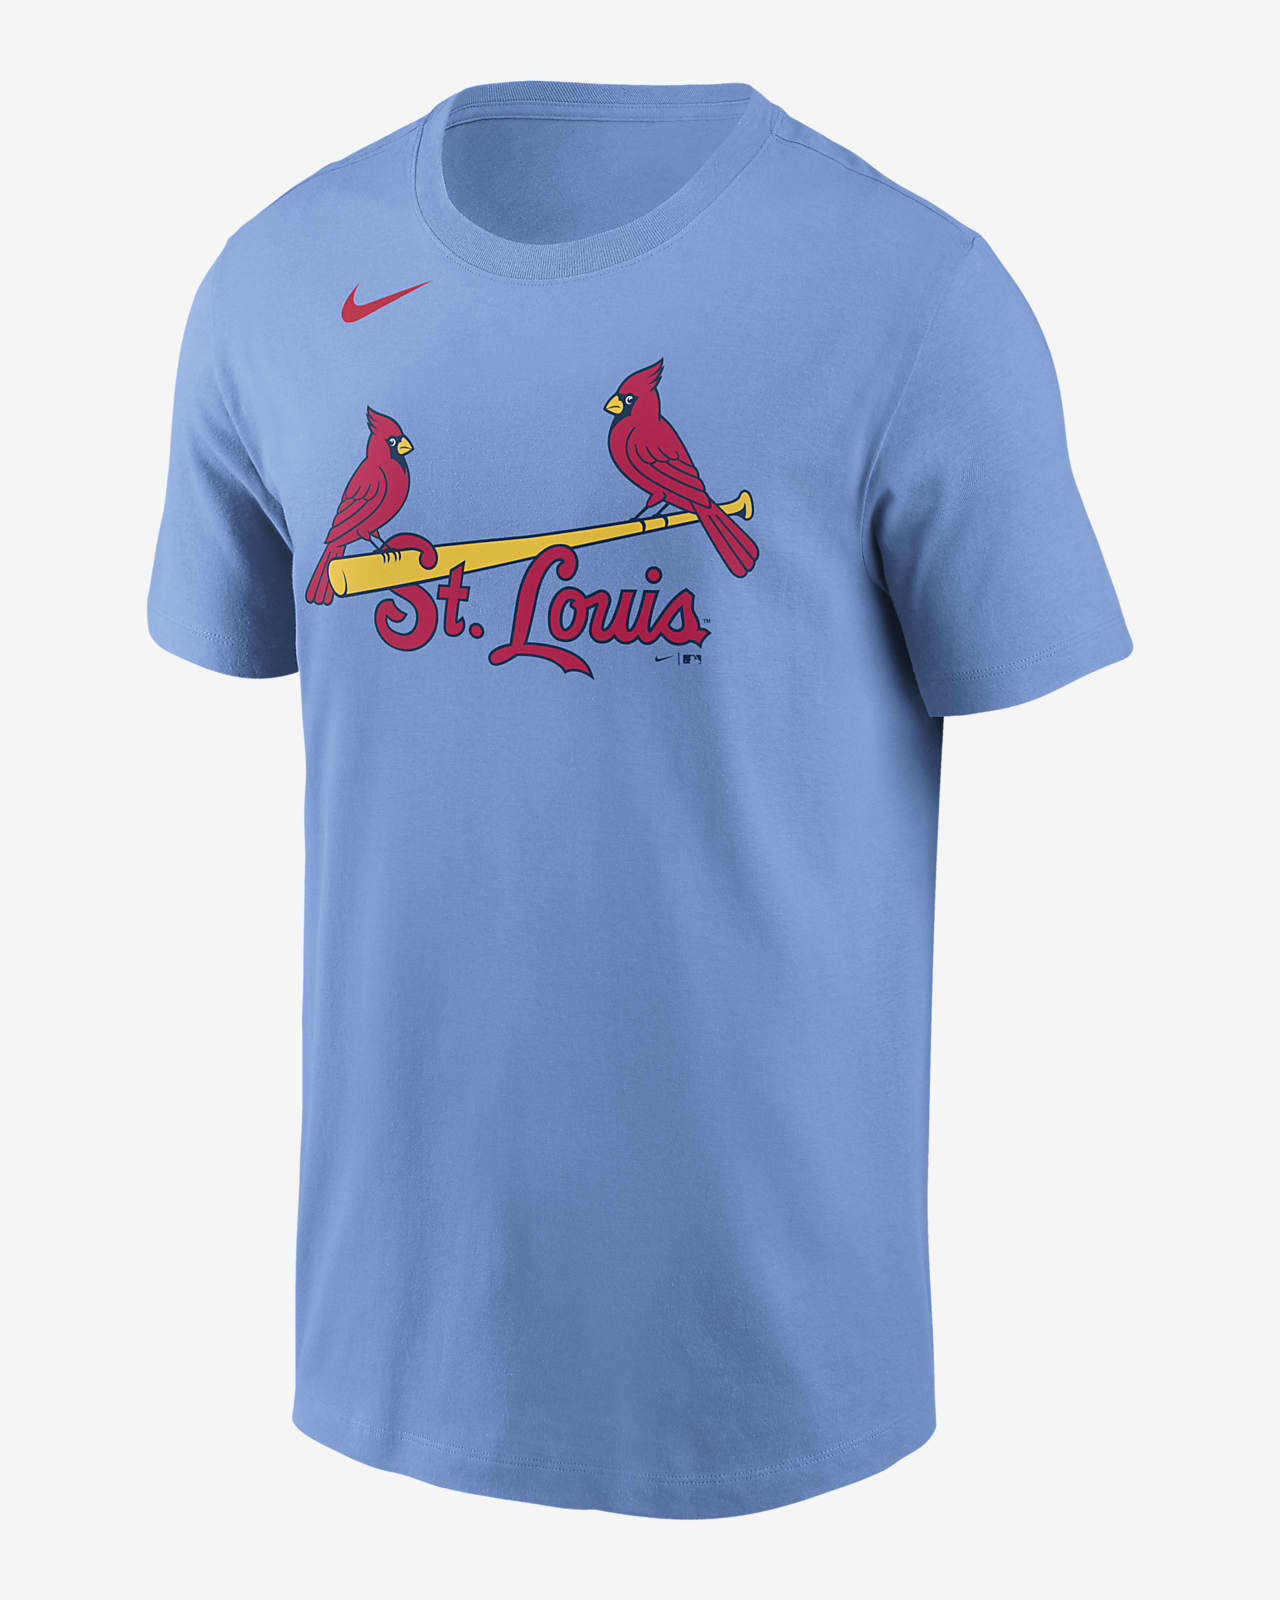 st louis cardinals nike shirt